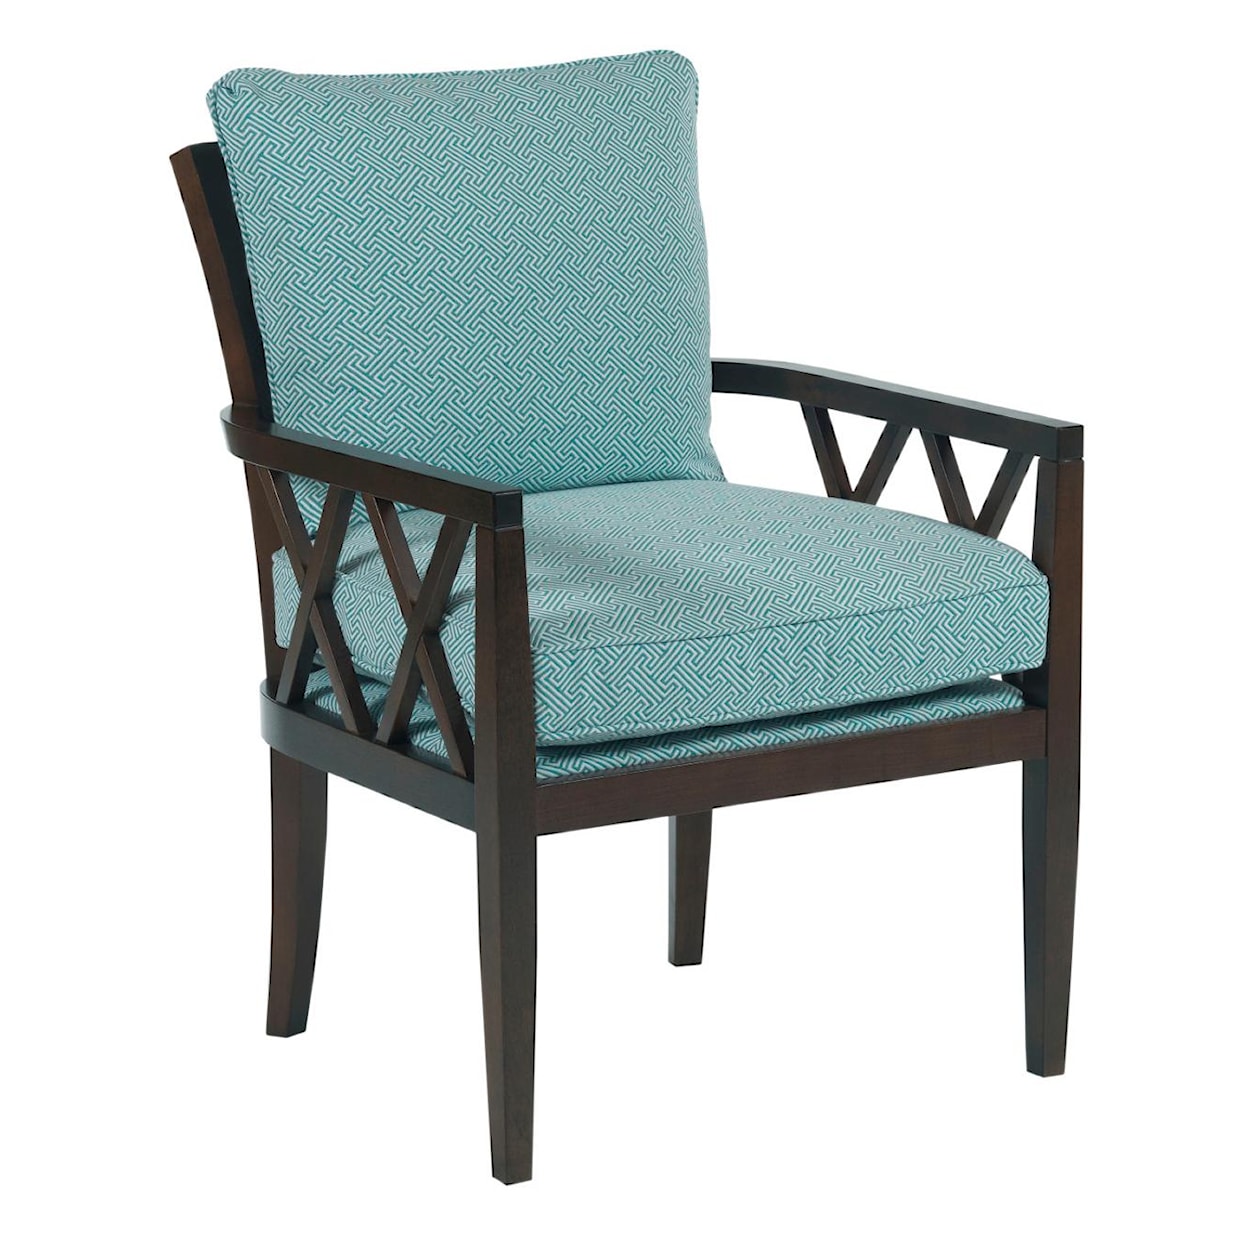 Kincaid Furniture Accent Chairs Veranda Chair